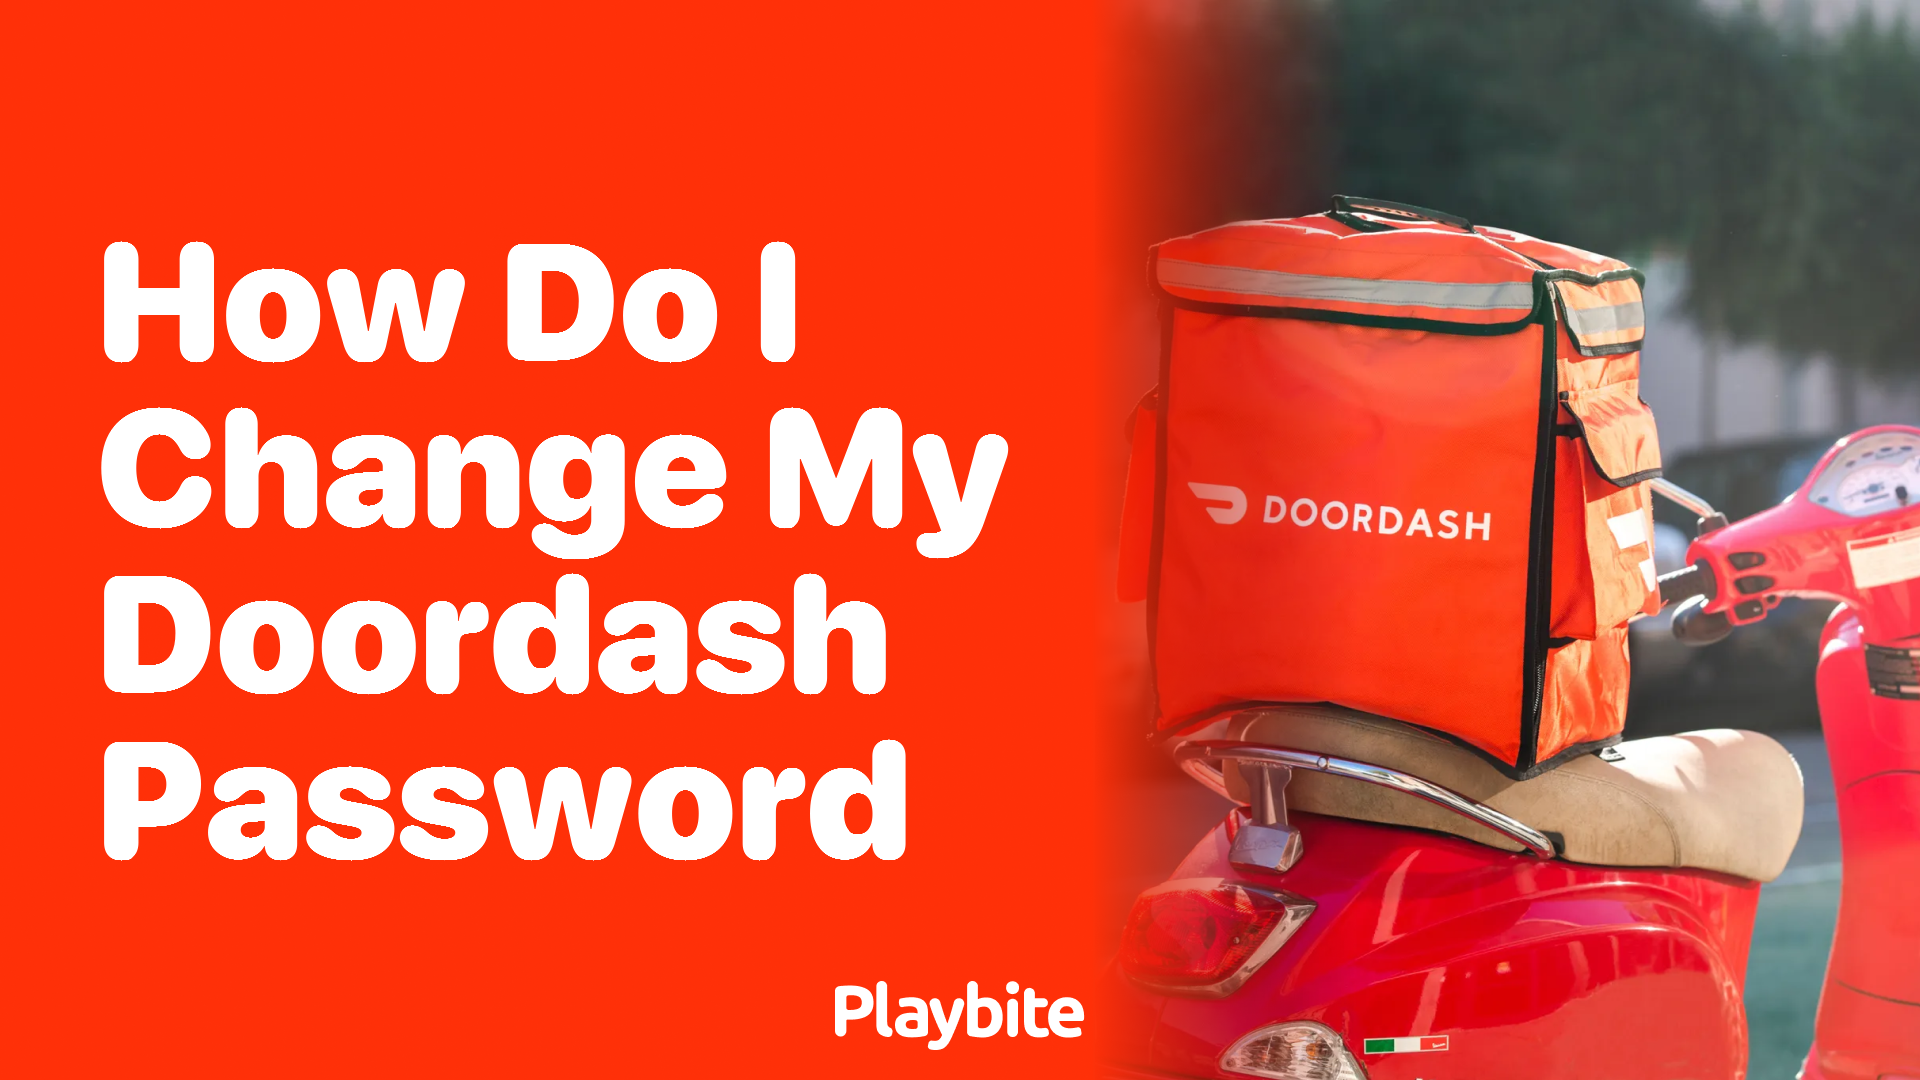 How do I change my DoorDash password?